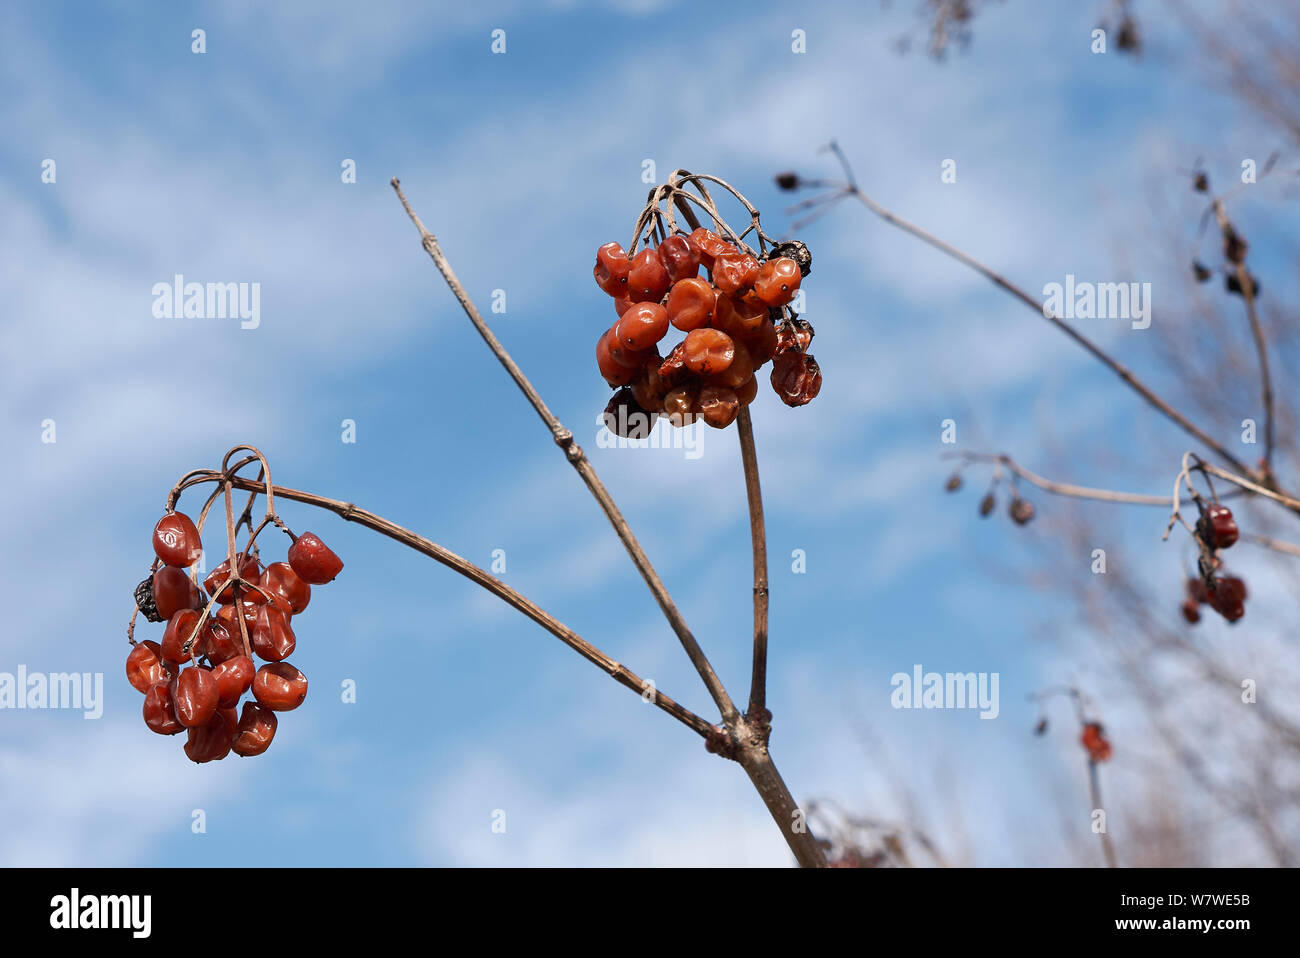 red fruit of Viburnum opulus shrub in winter Stock Photo